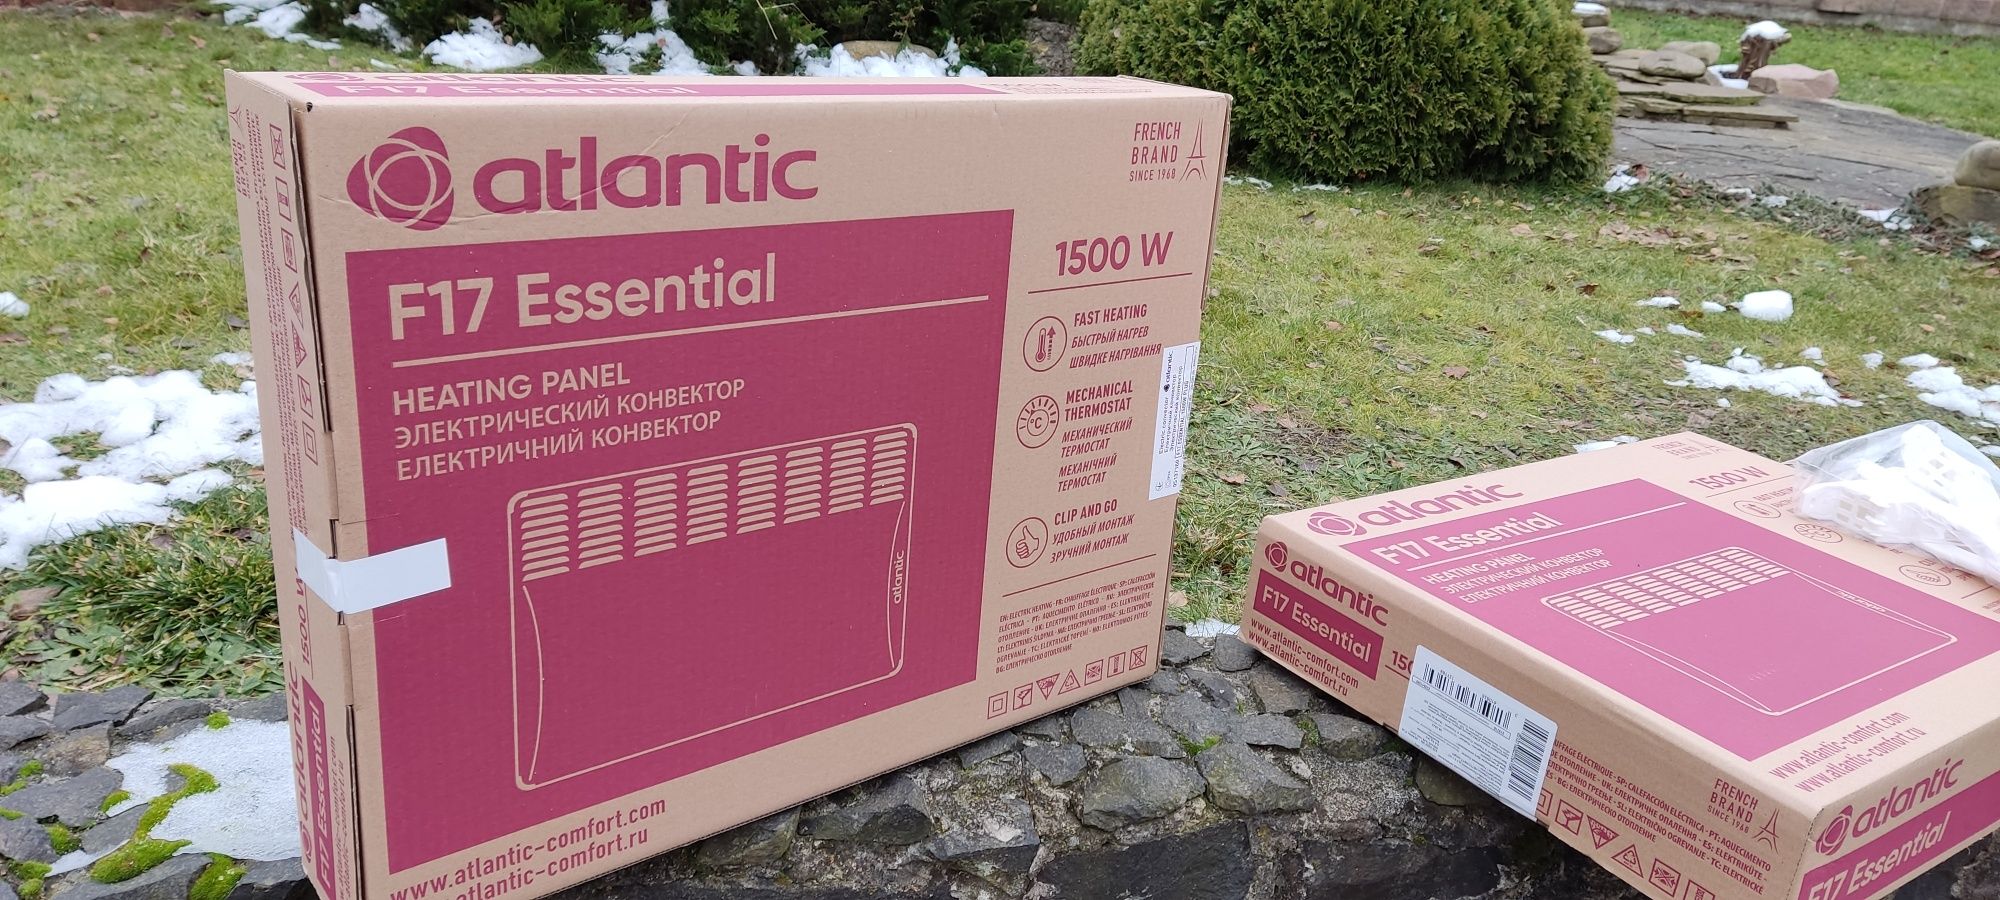 Продам конвектори Atlantic F17 Essential